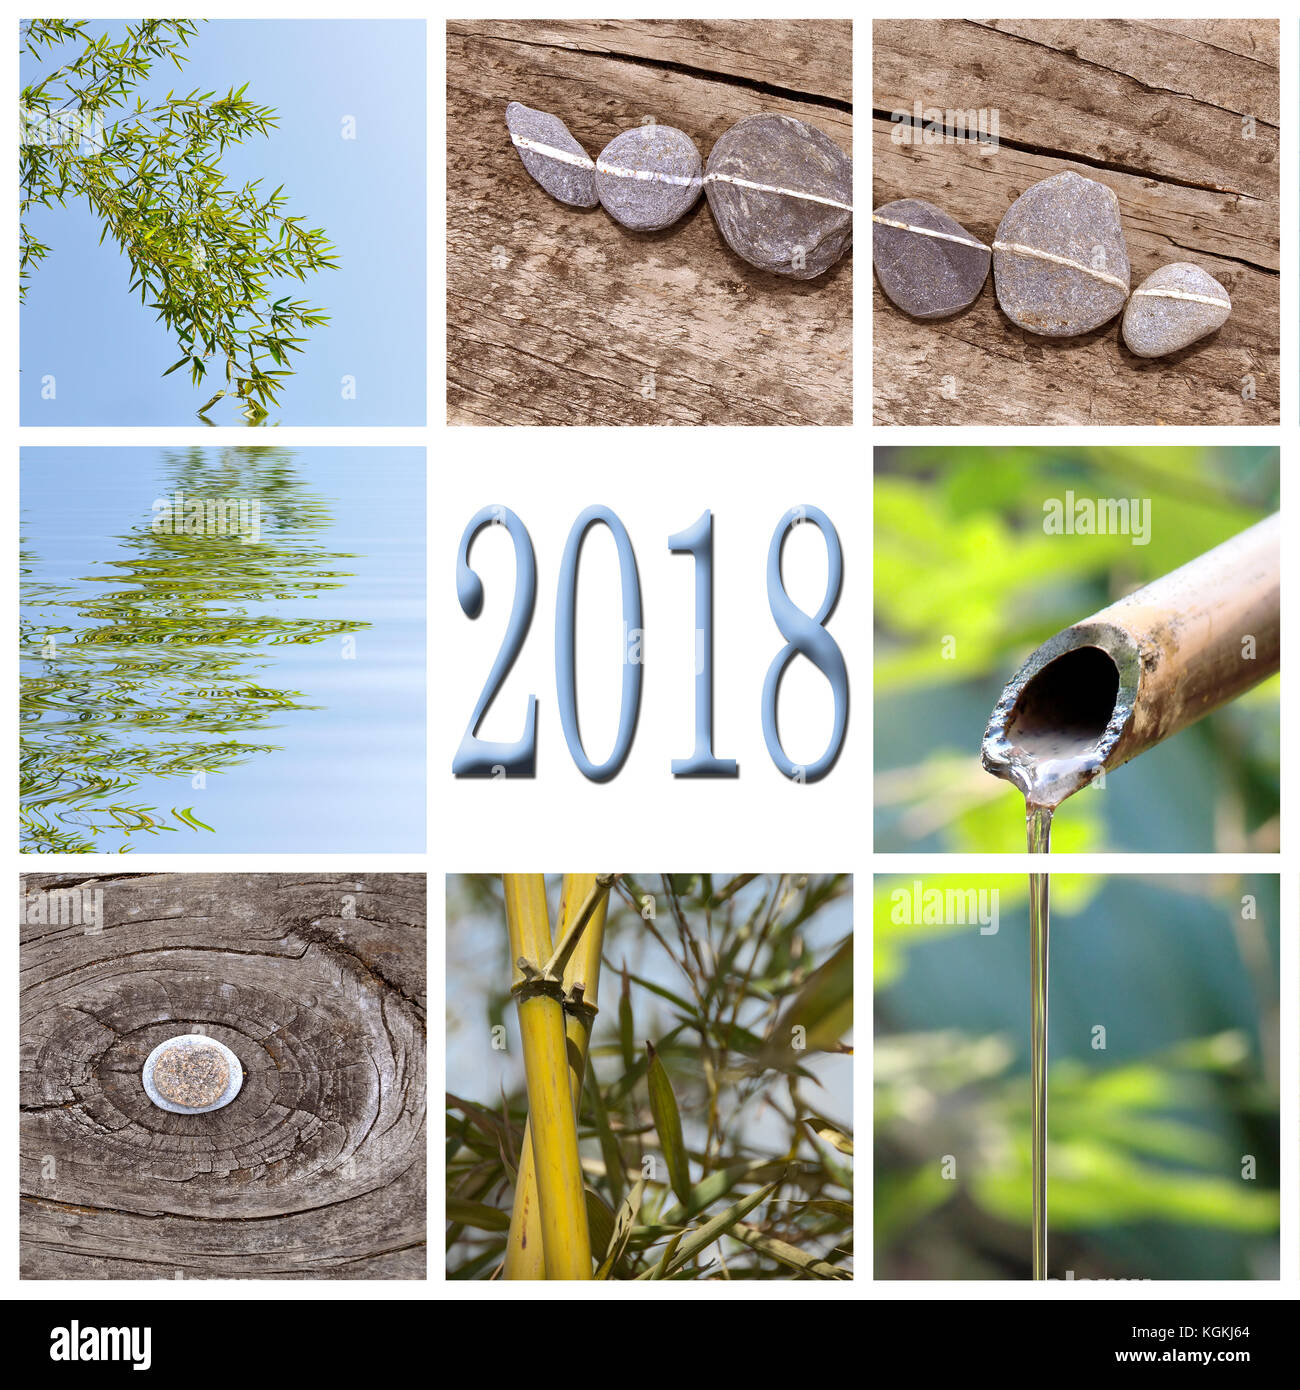 2018, bambou zen square collage Banque D'Images